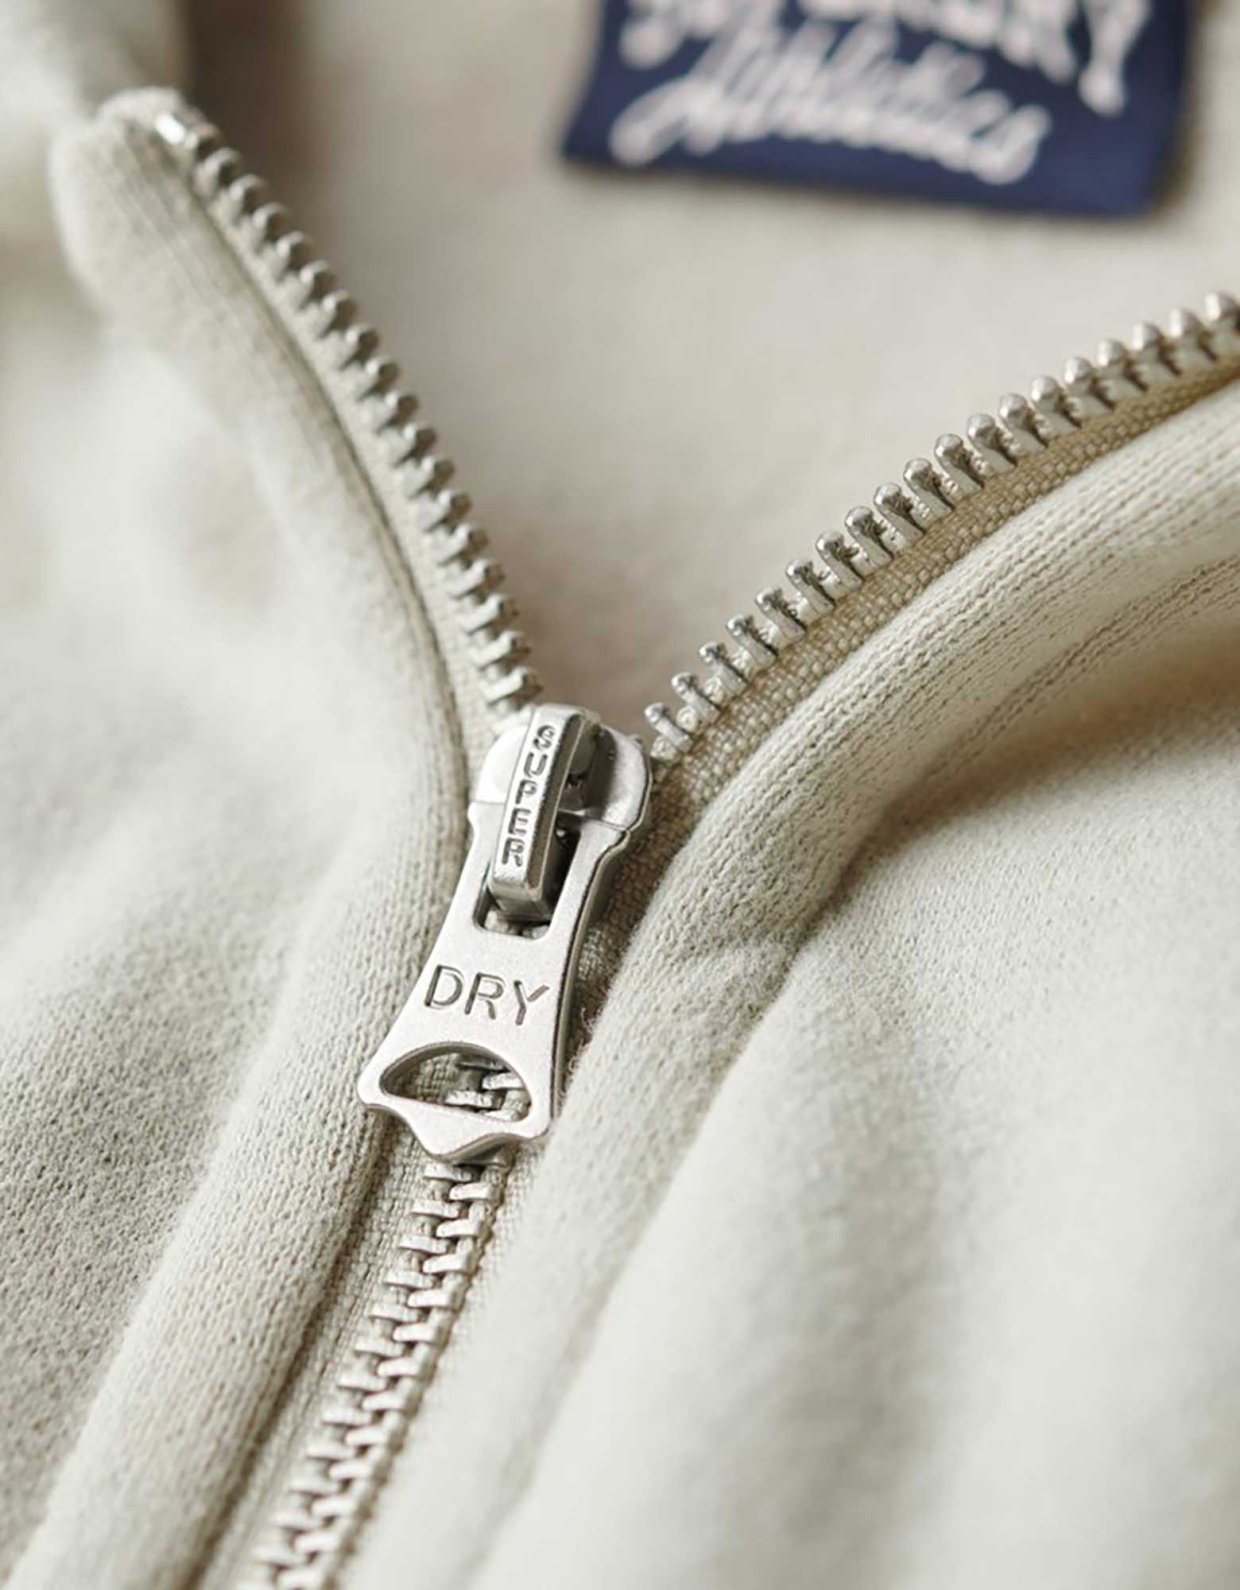 Superdry Essential logo zip hoodie light stone beige